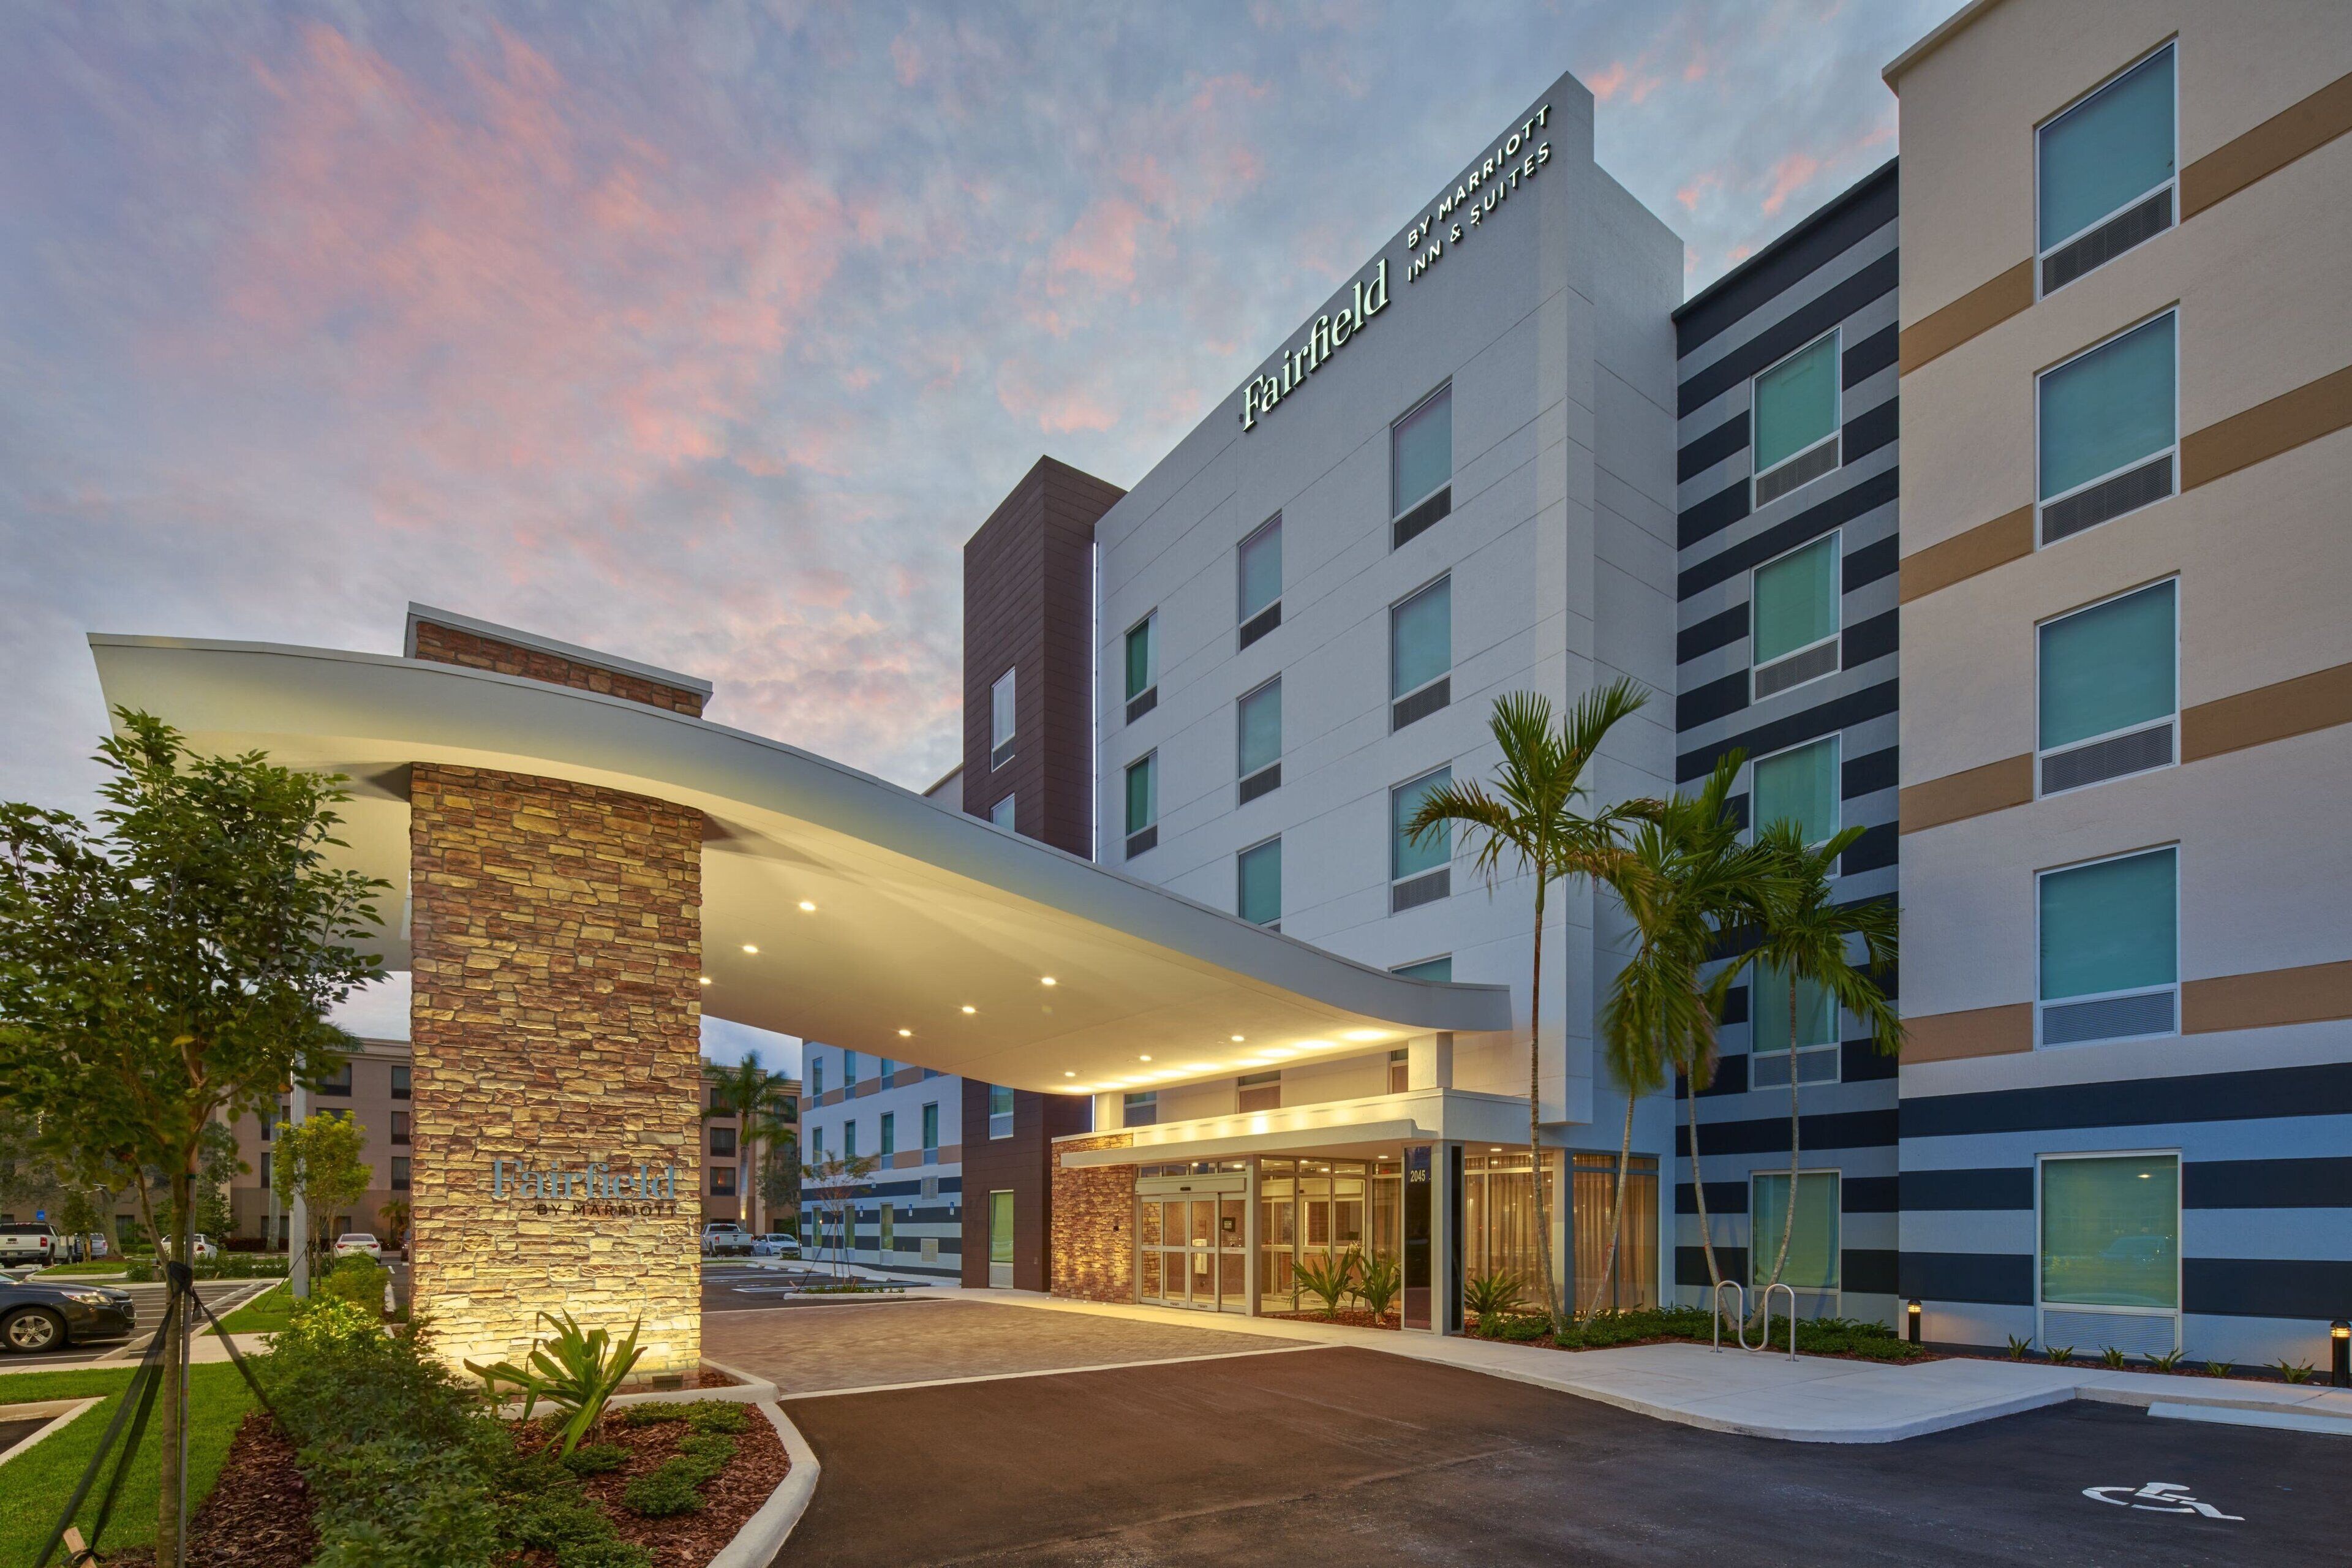 Fairfield Inn & Suites West Palm Beach